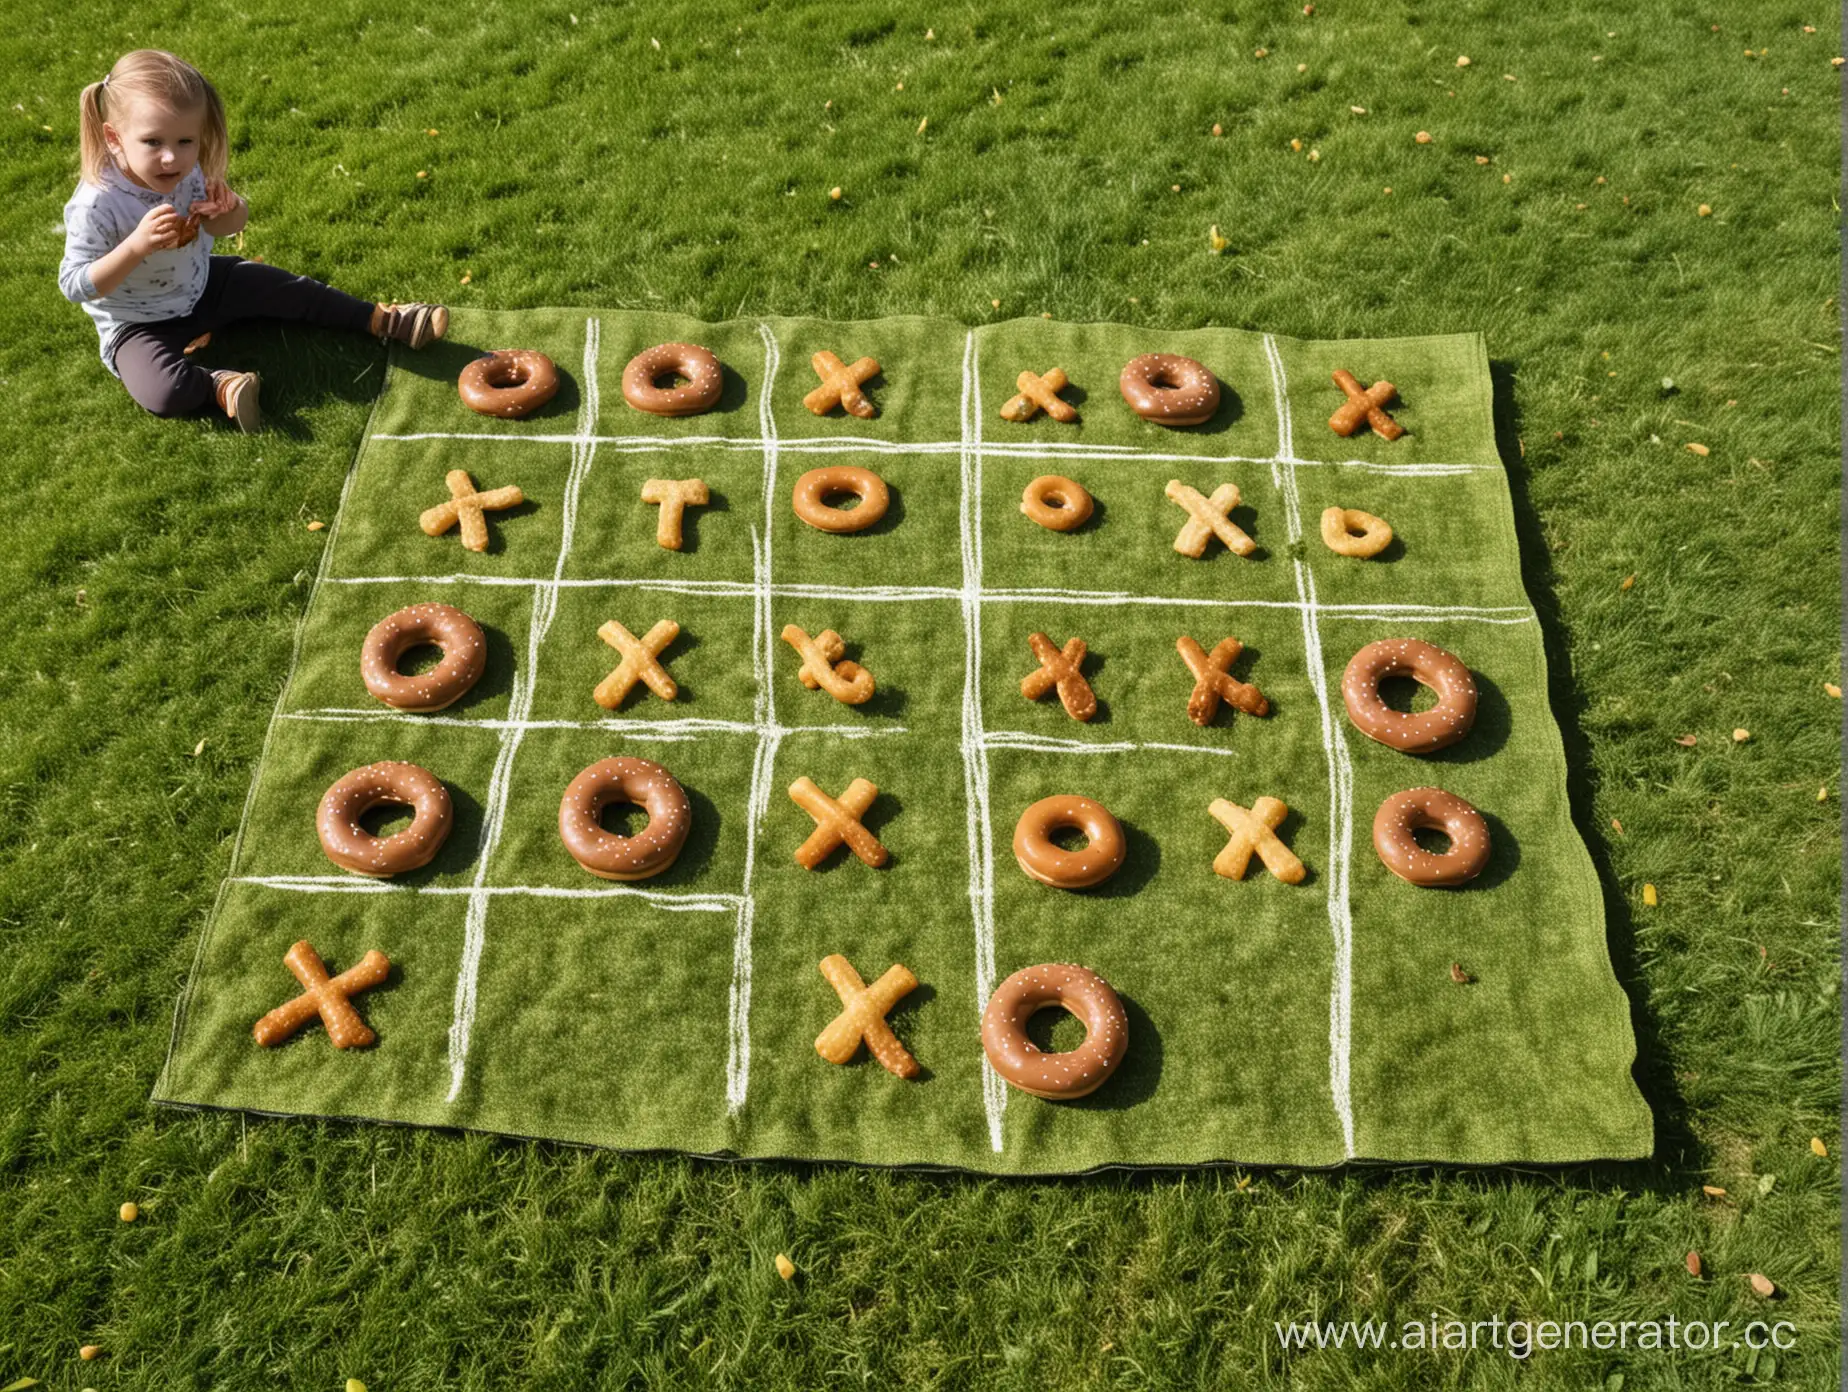 Дети играют в большую игру «Крестики-нолики» на траве. Всего 9 ячеек.Крестики-шоколад, нолики-пончик. На фоне парк, дети